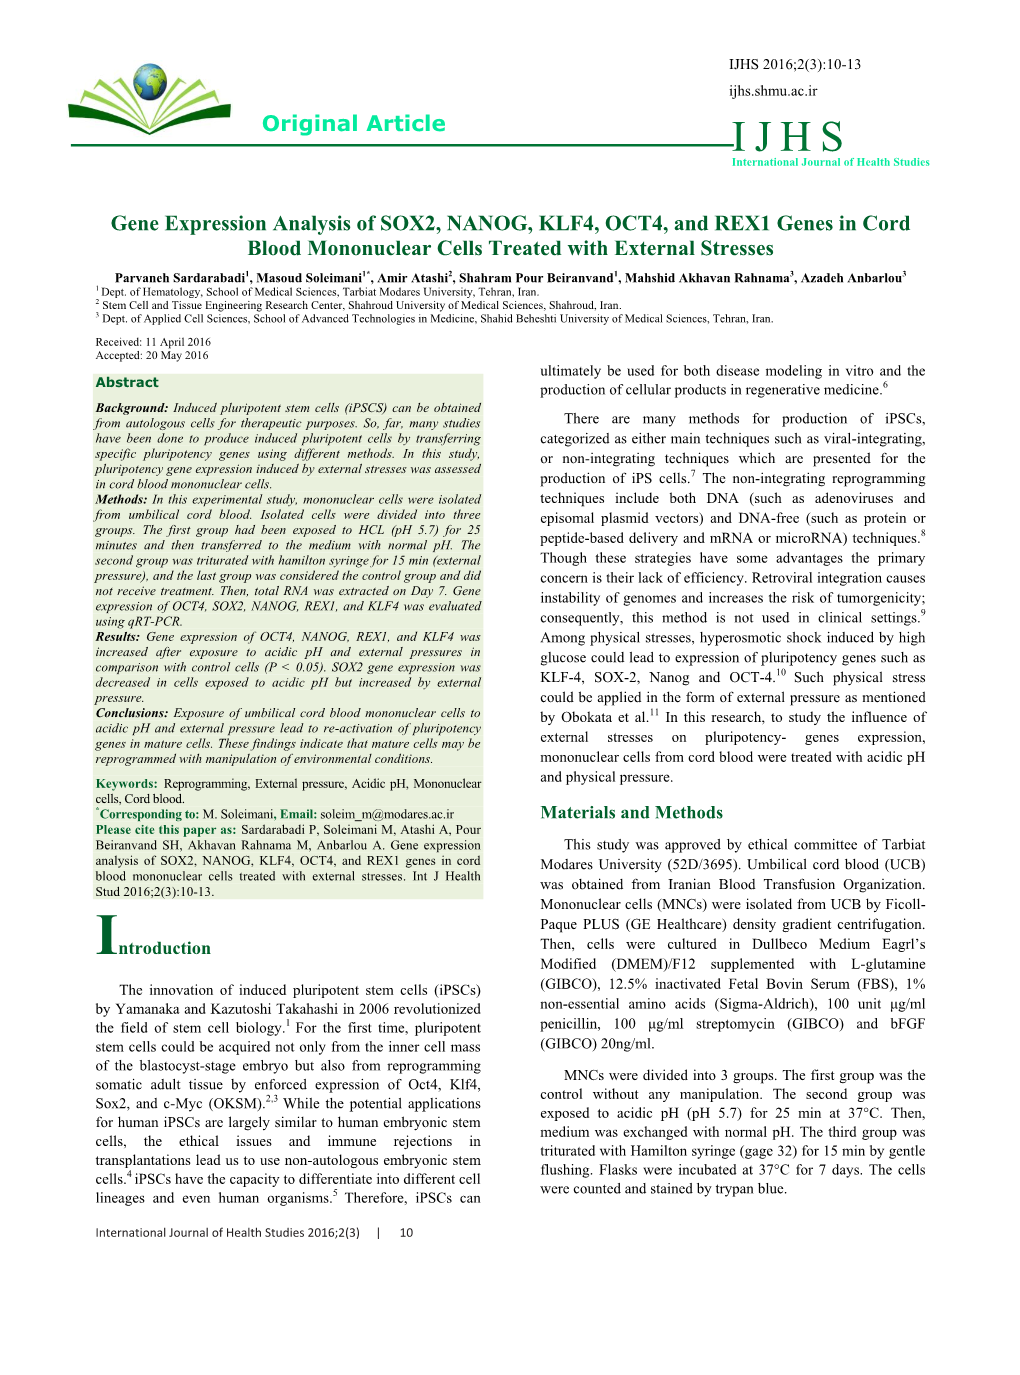 Original Article Gene Expression Analysis of SOX2, NANOG, KLF4